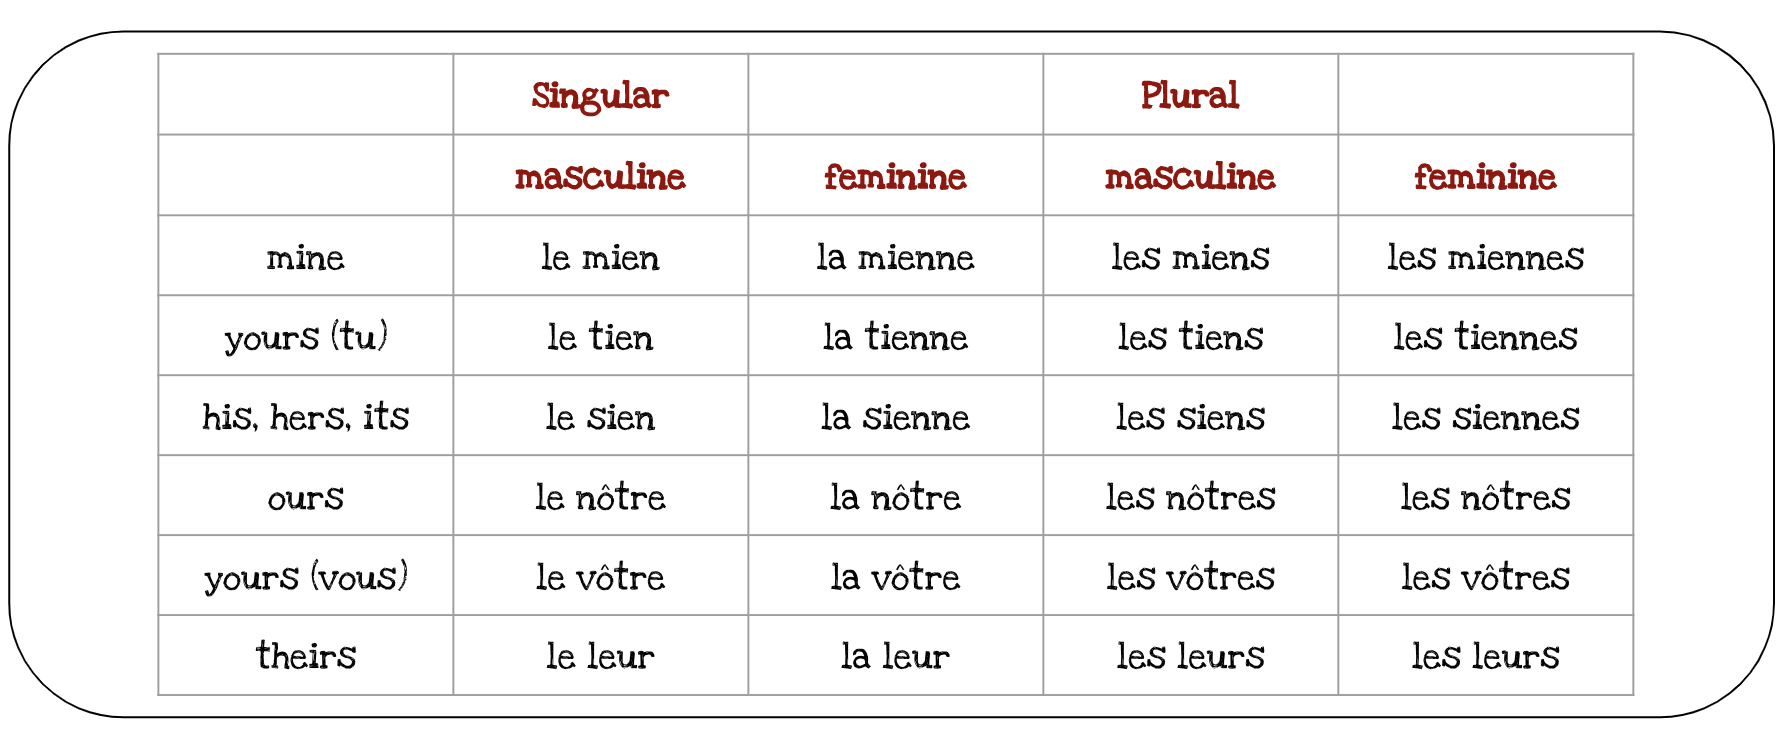 French Pronouns Chart